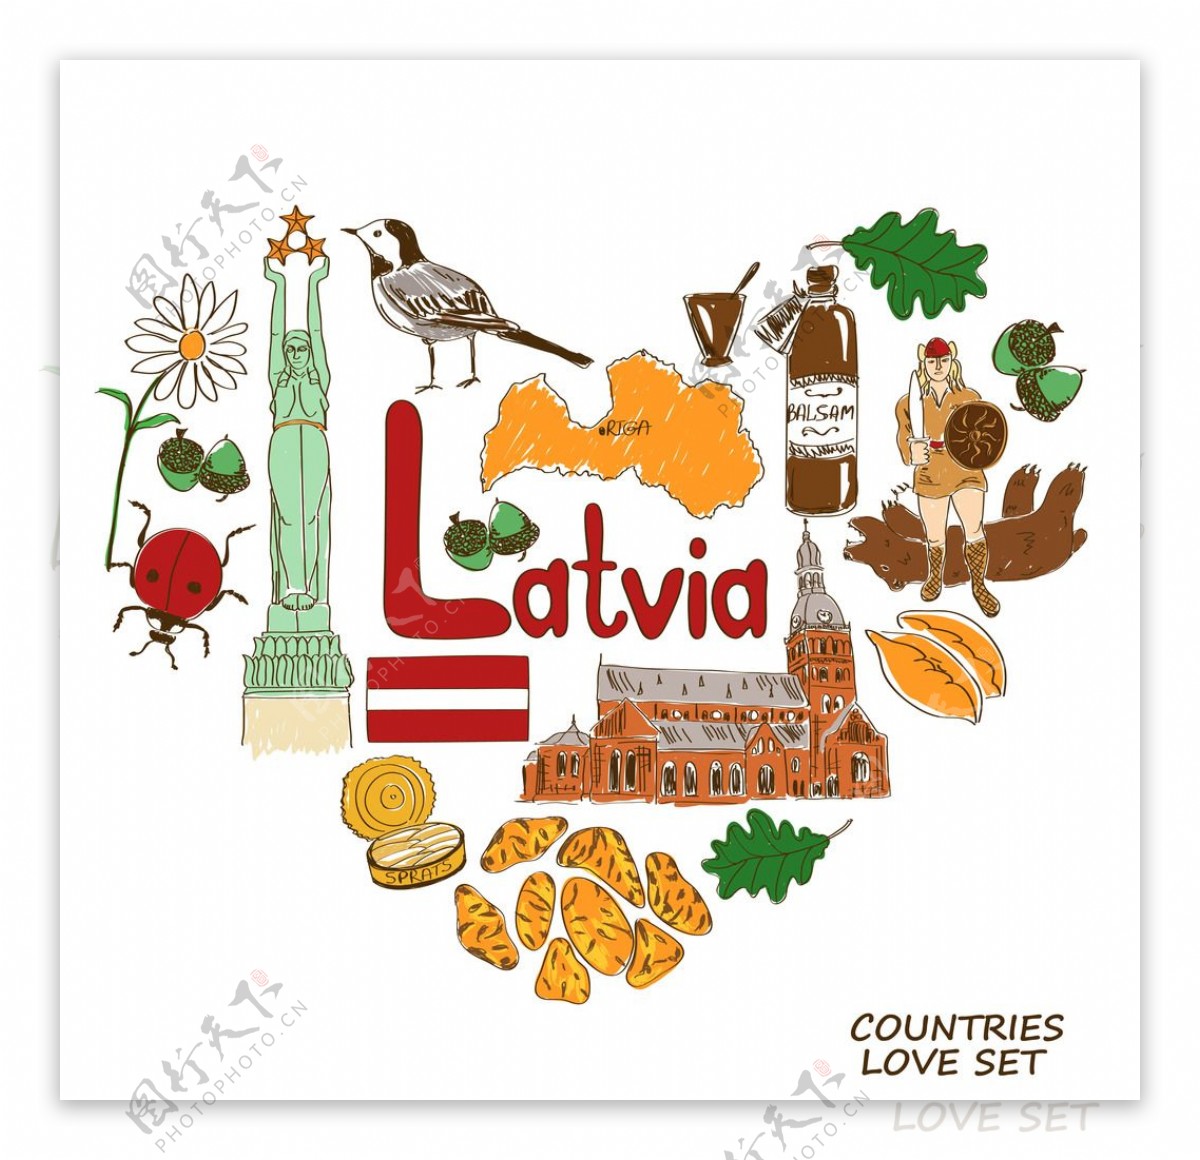 拉脱维娅国家元素